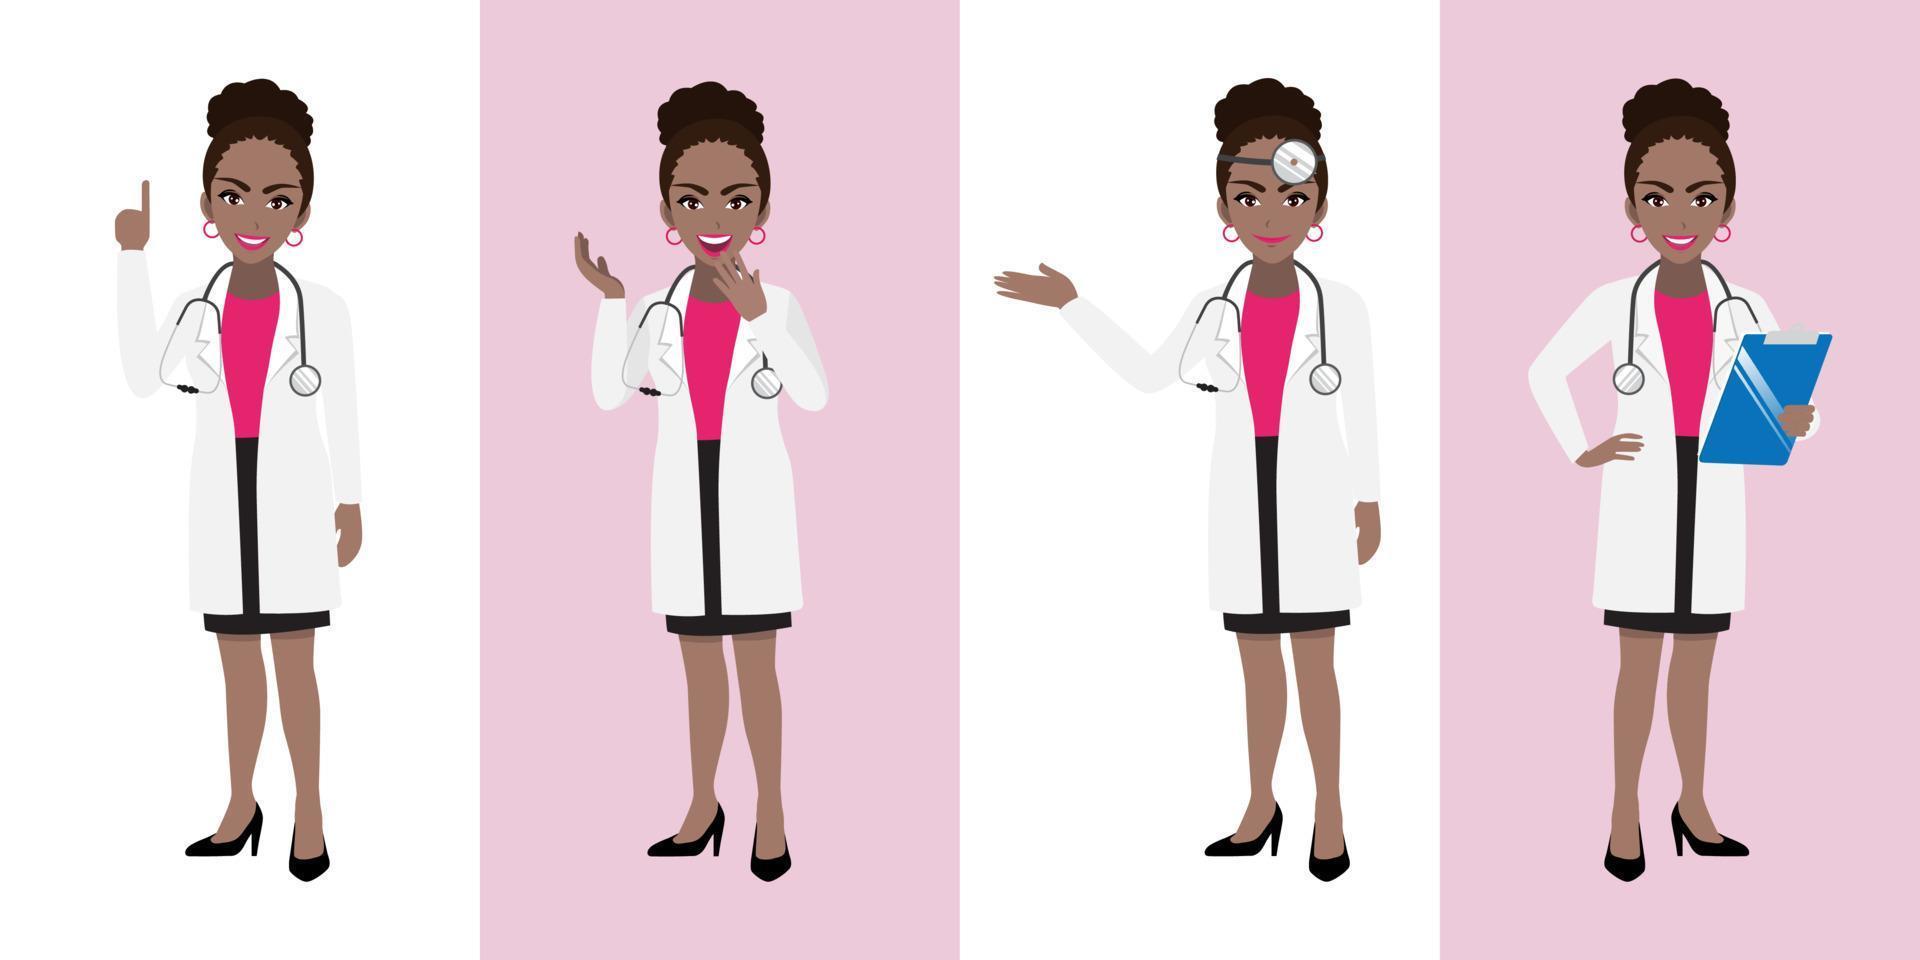 conjunto de personagens de desenhos animados de médica, médica africana americana em poses diferentes, trabalhador médico ou equipe hospitalar. ícone plano de desenho animado médico em um vetor de fundo branco e rosa